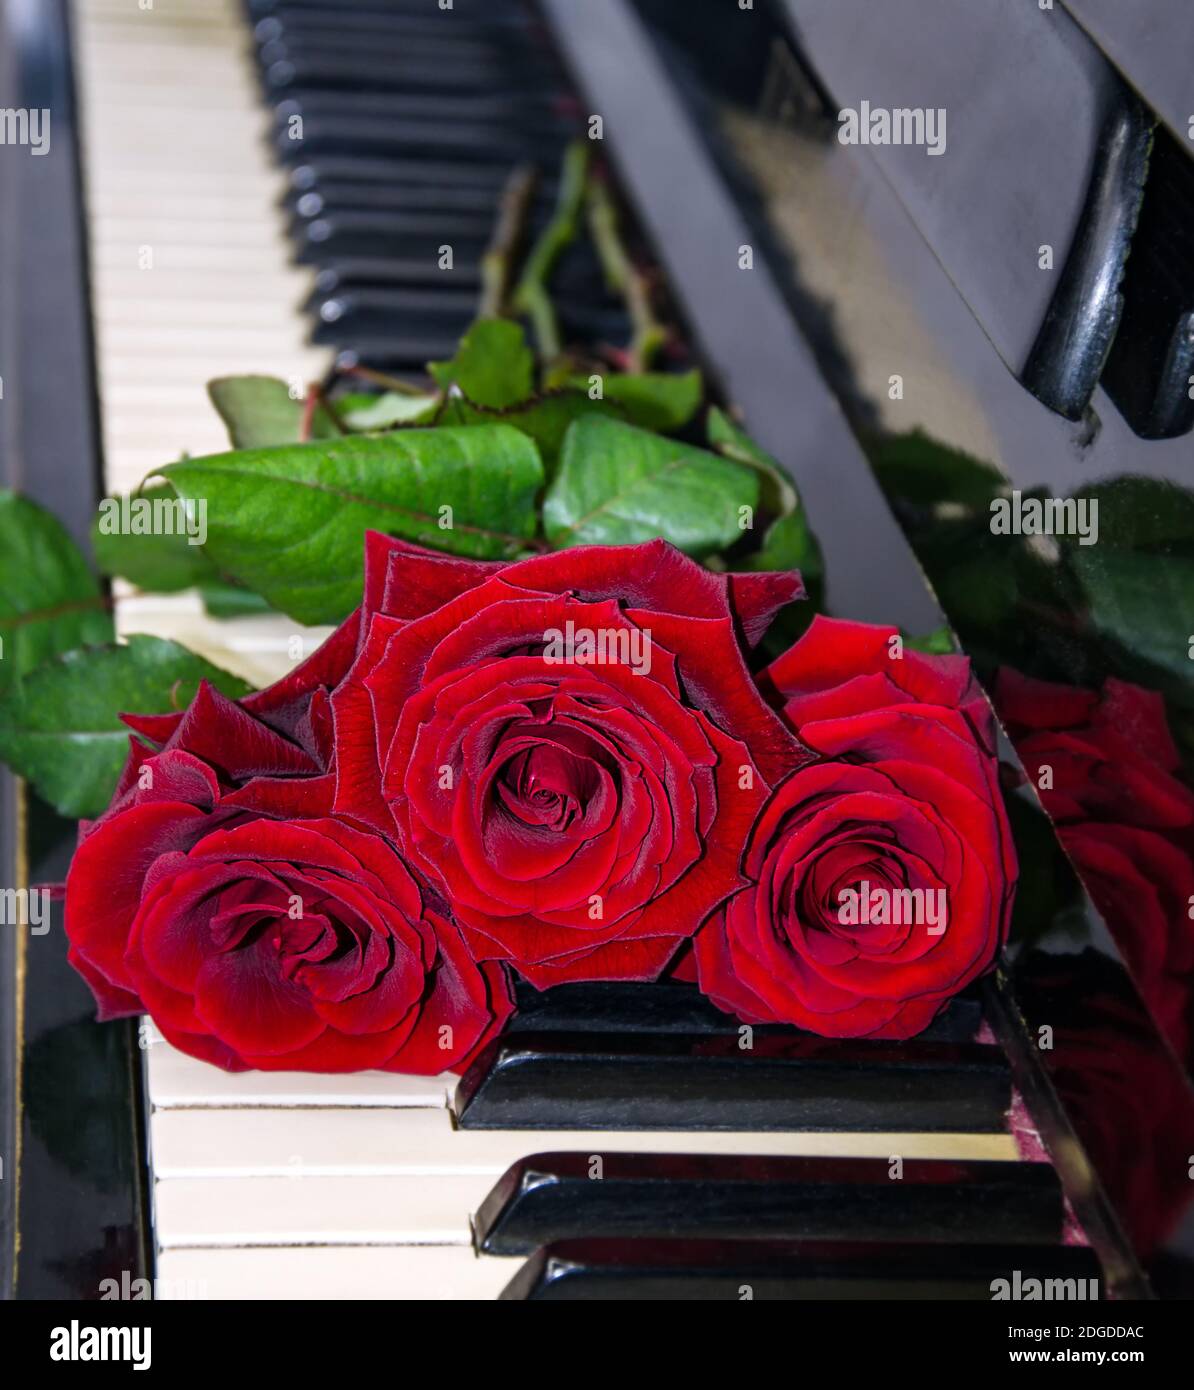 bouquet di rose rosse sulle chiavi del piano, fiori da vicino Foto Stock